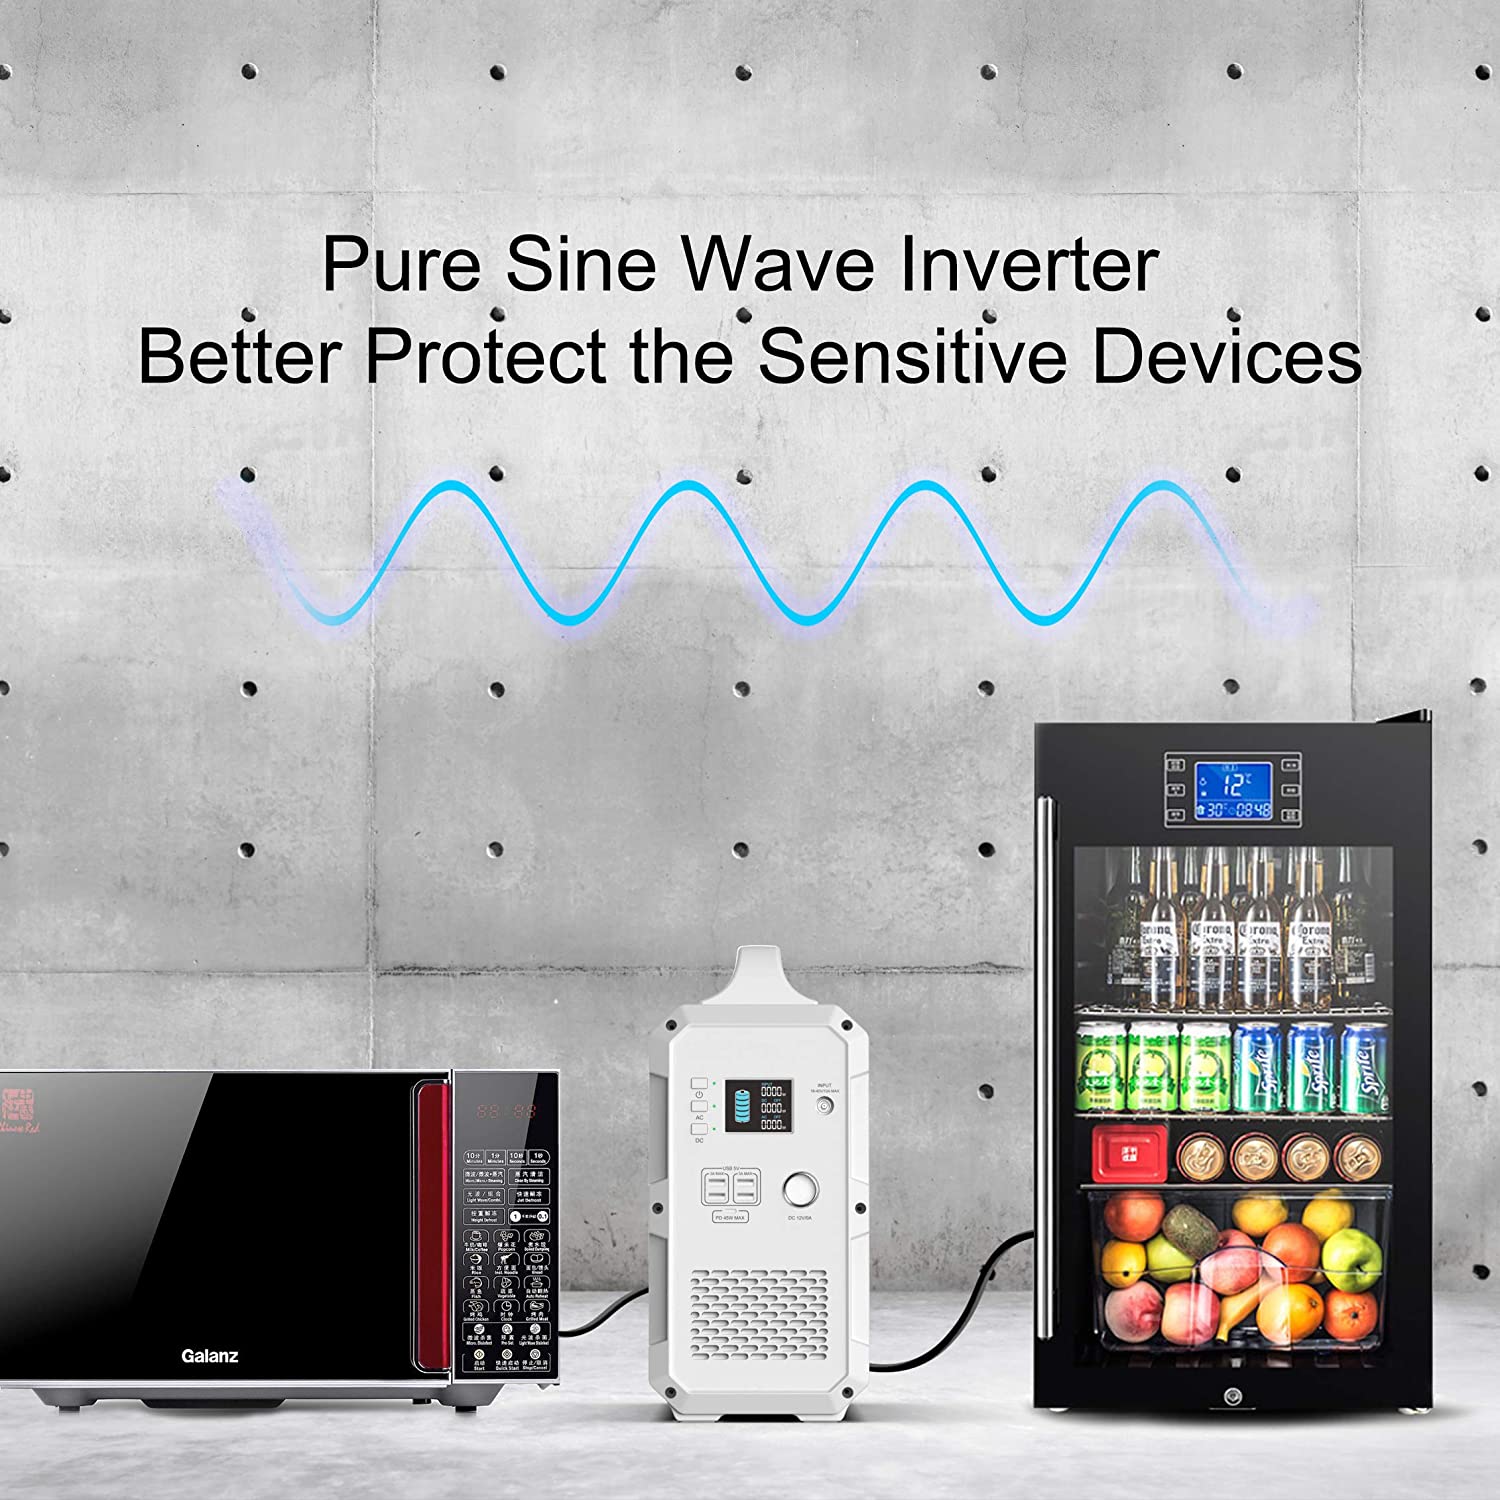 El generador solar Bluetti EB150 1500Wh tiene inverter pure sine wave pura onda para proteger los equipos sensitivos.